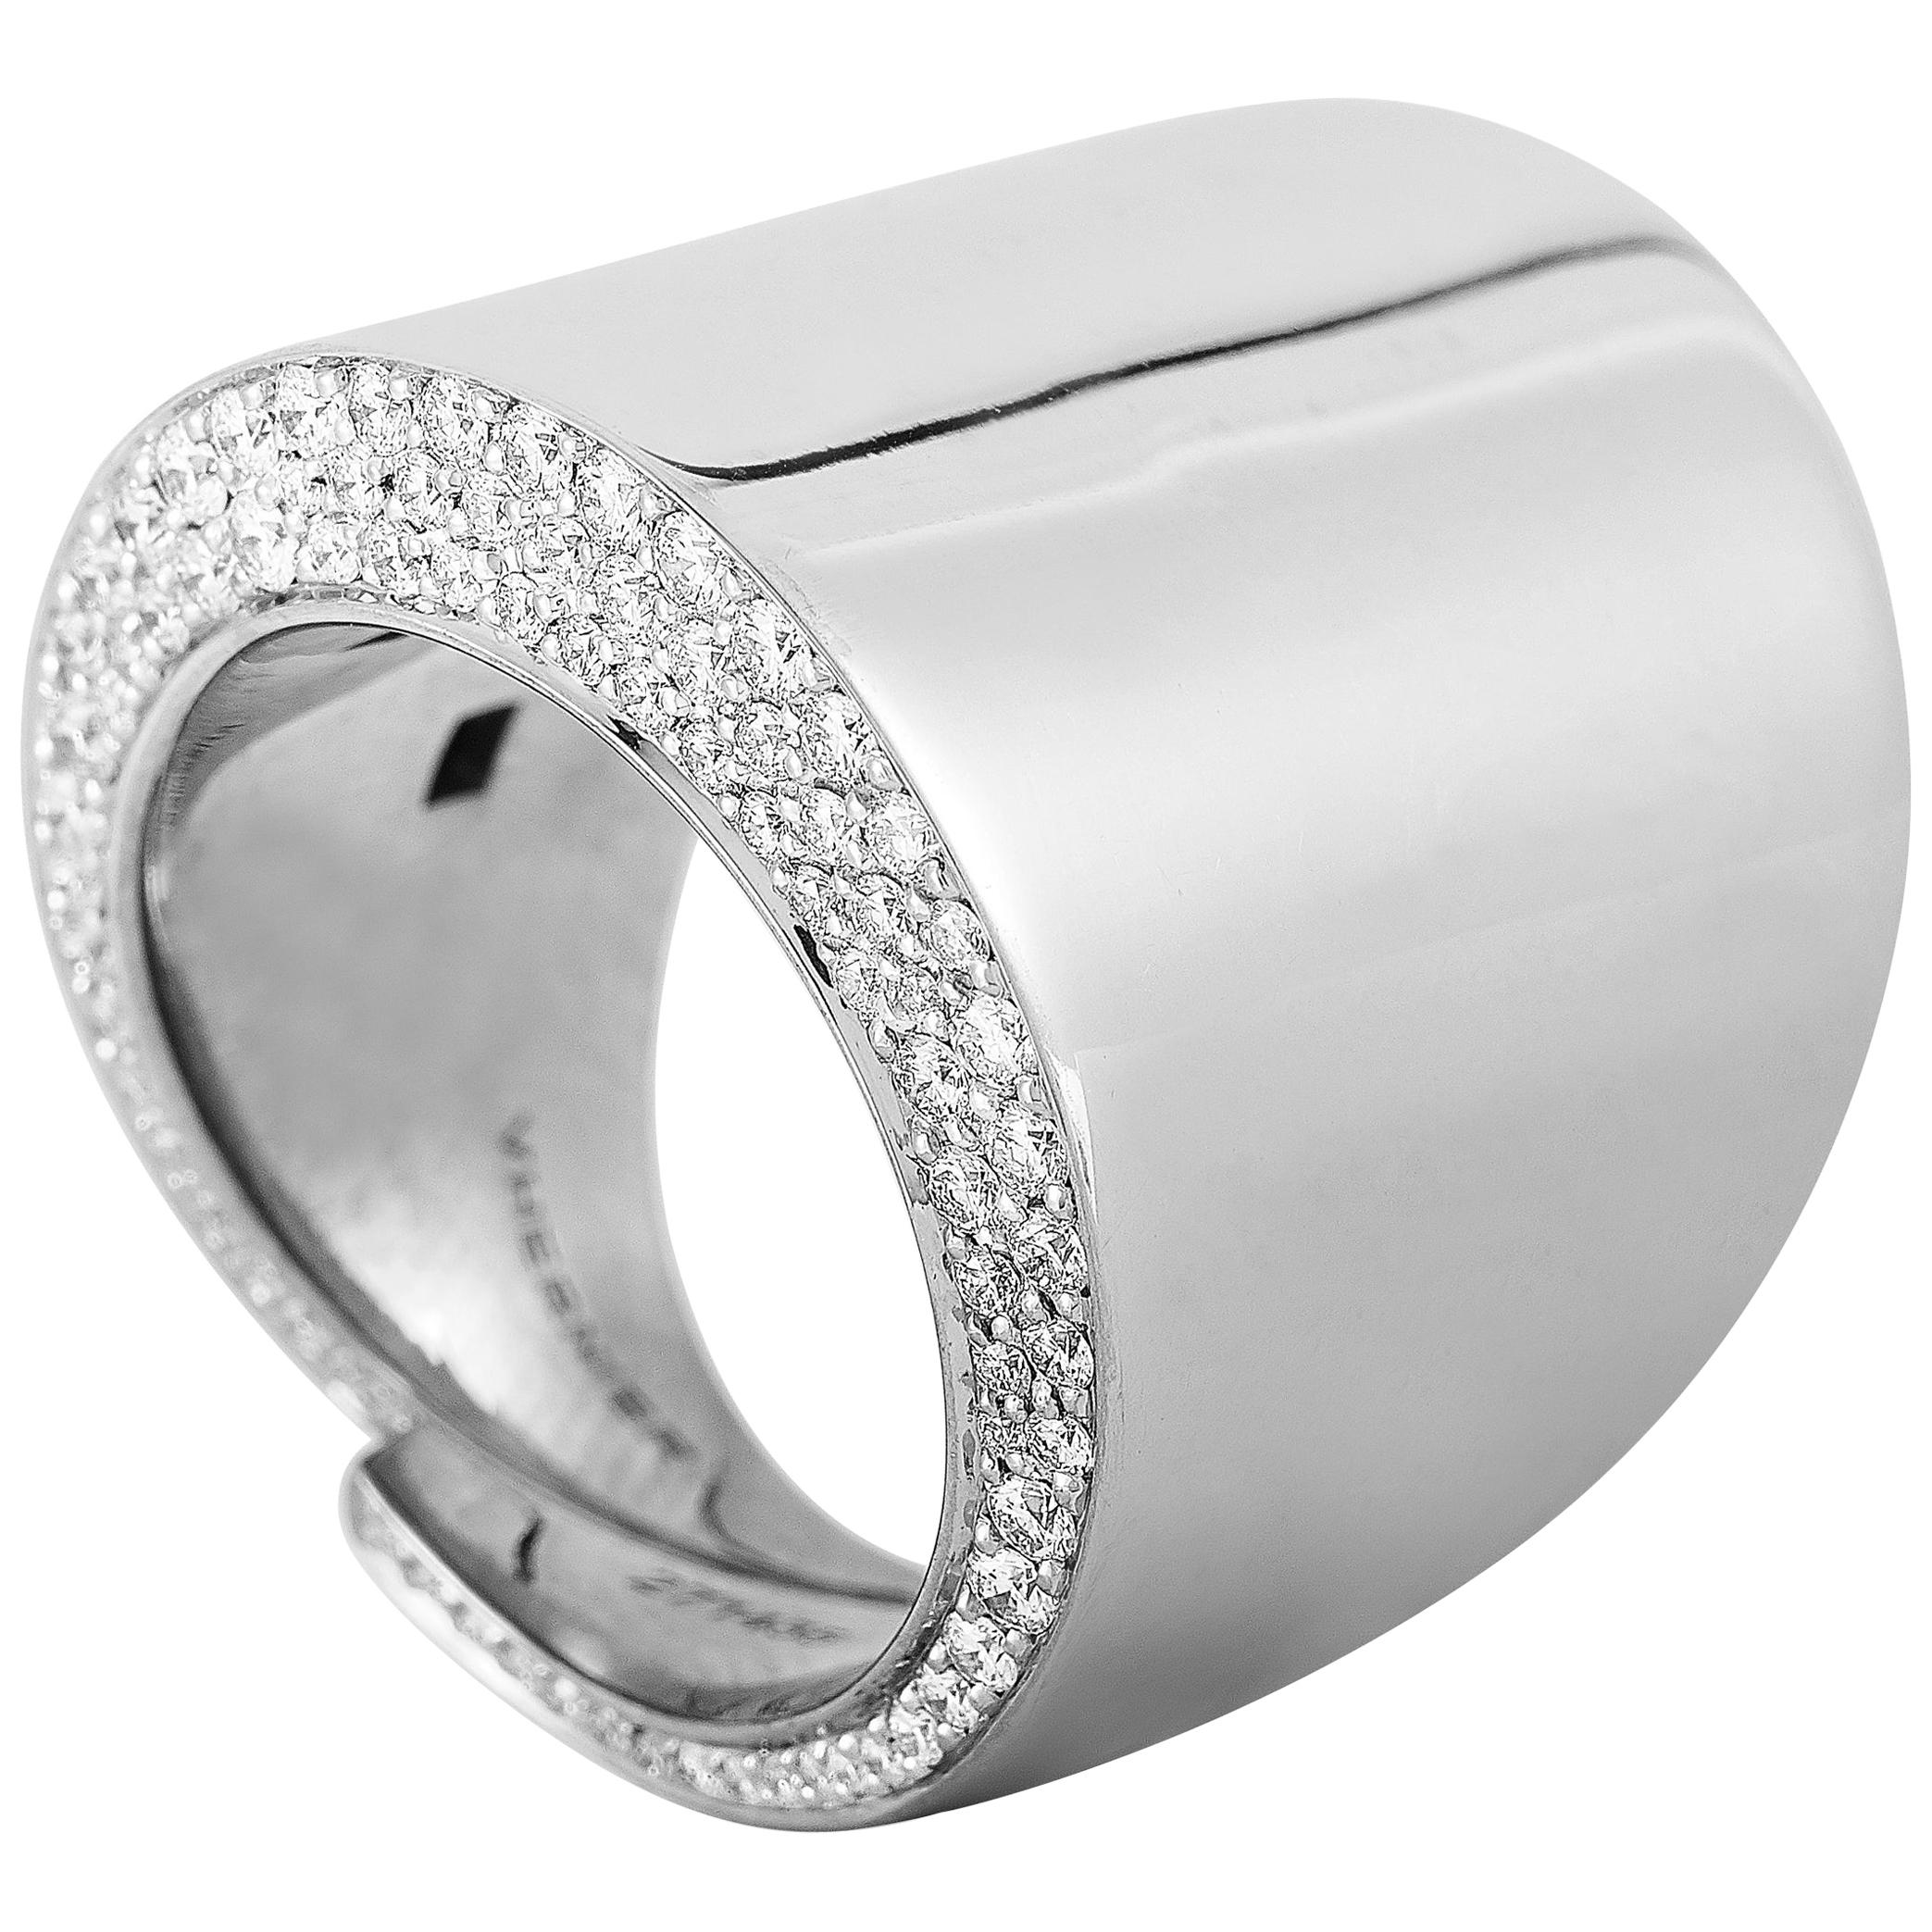 Vhernier Vague Grande 18 Karat White Gold 1.78 Carat Diamond Ring